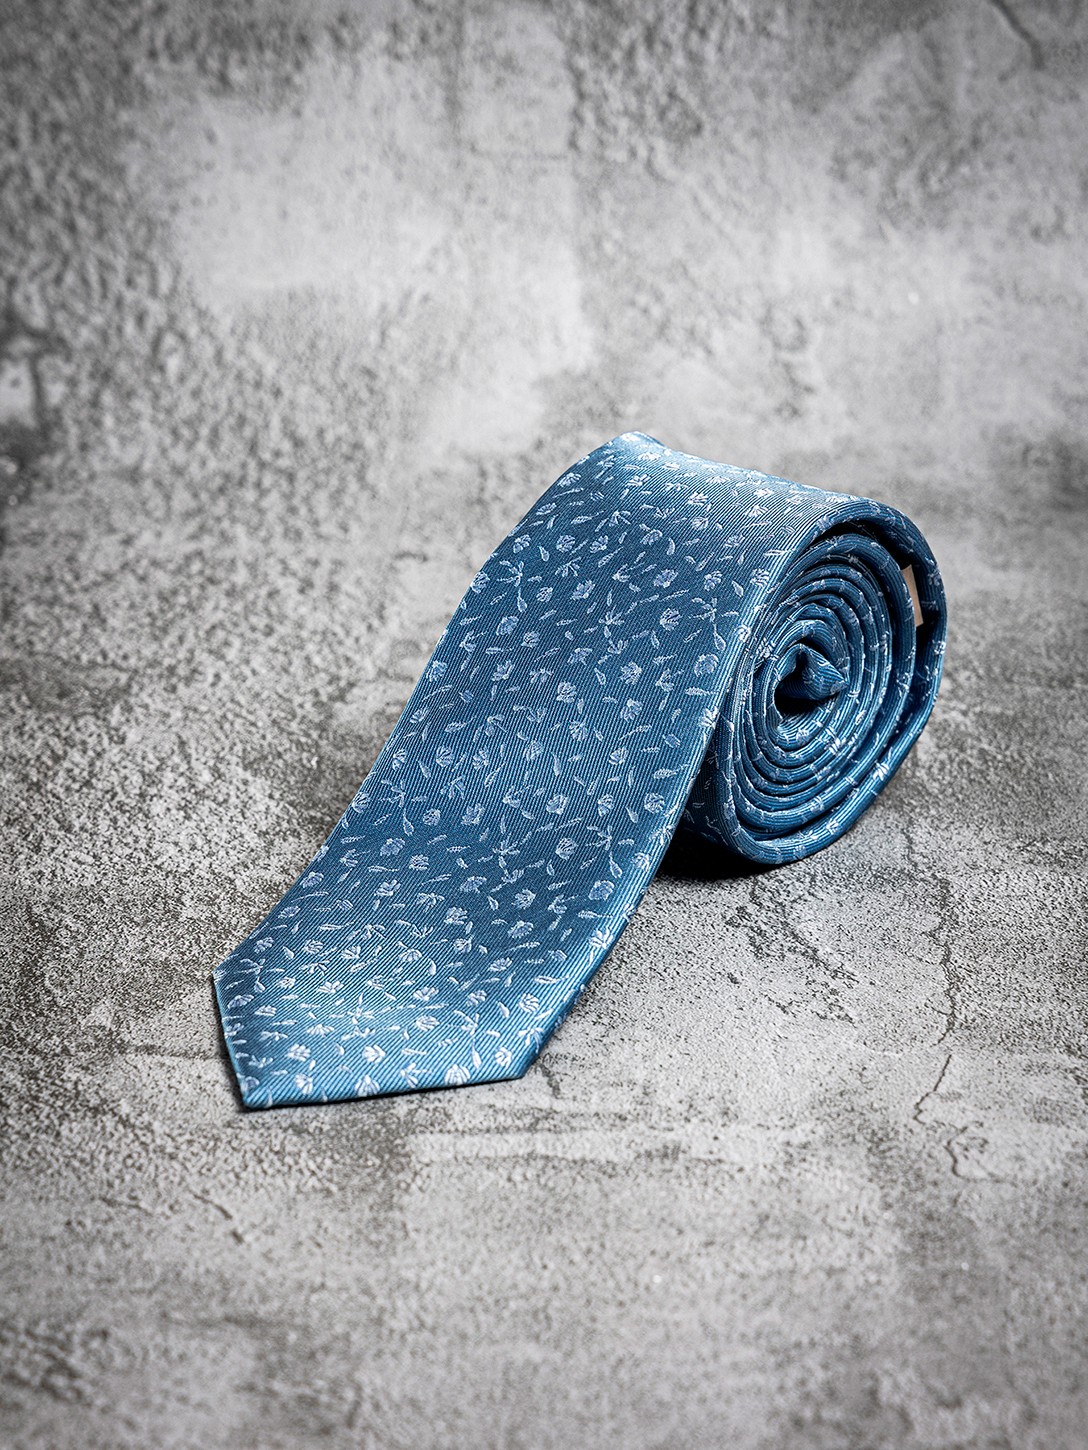 Cravate bleue jacquard...